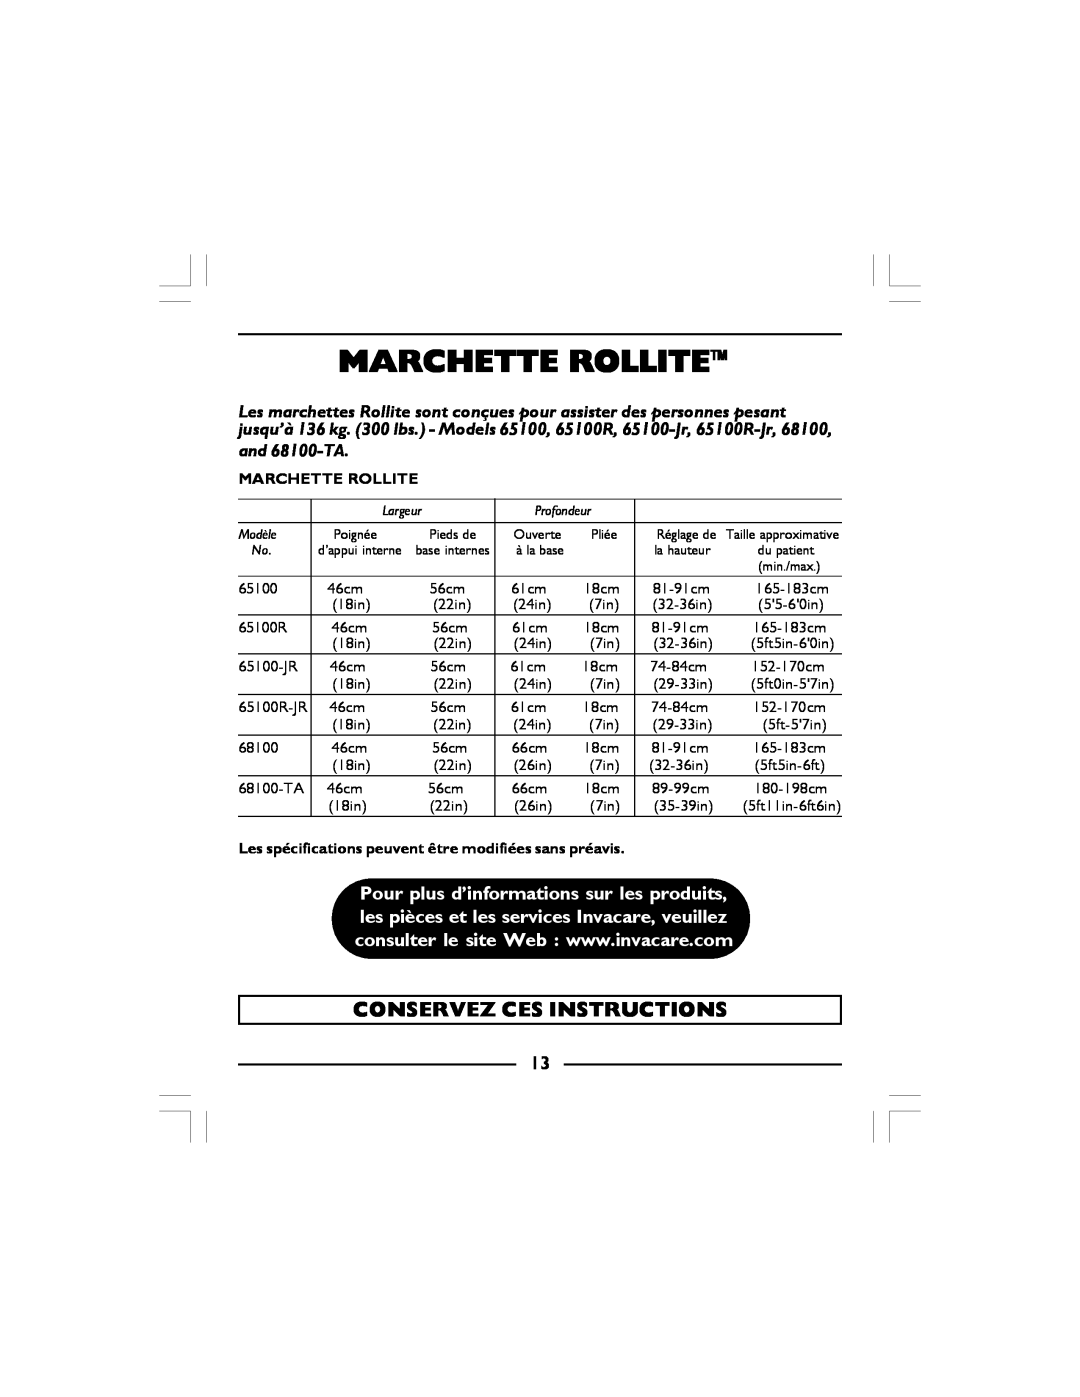 Invacare 68100 manual Marchette Rollite, Conservez Ces Instructions, Les spécifications peuvent être modifiées sans préavis 